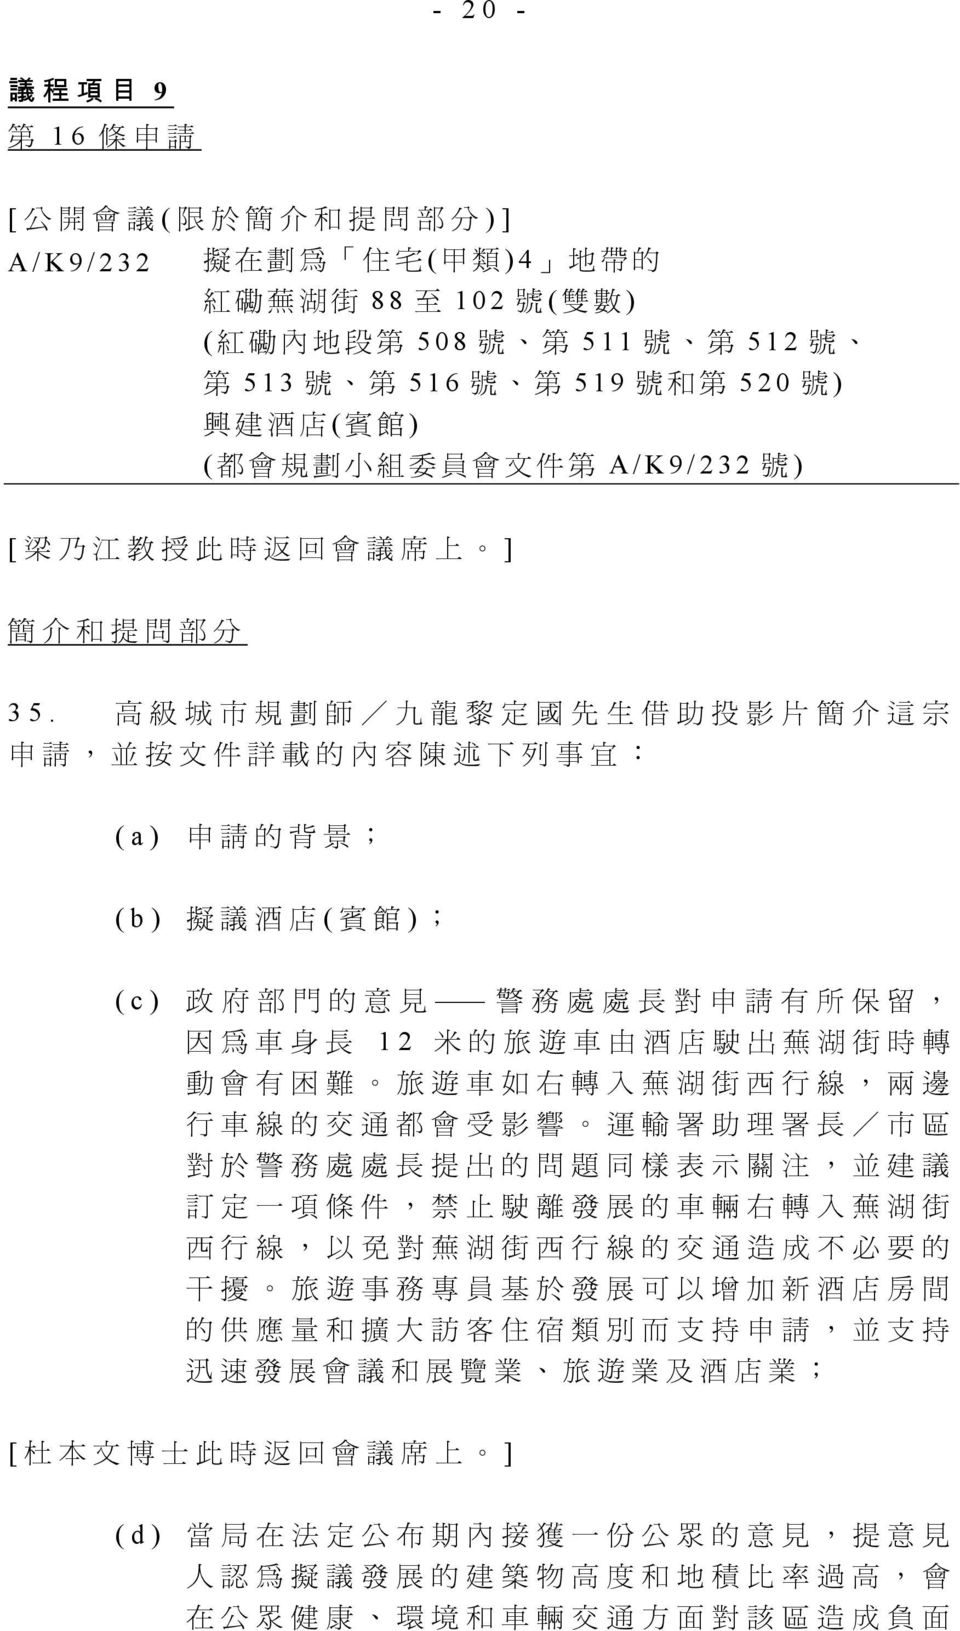 高 級 城 市 規 劃 師 / 九 龍 黎 定 國 先 生 借 助 投 影 片 簡 介 這 宗 申 請, 並 按 文 件 詳 載 的 內 容 陳 述 下 列 事 宜.